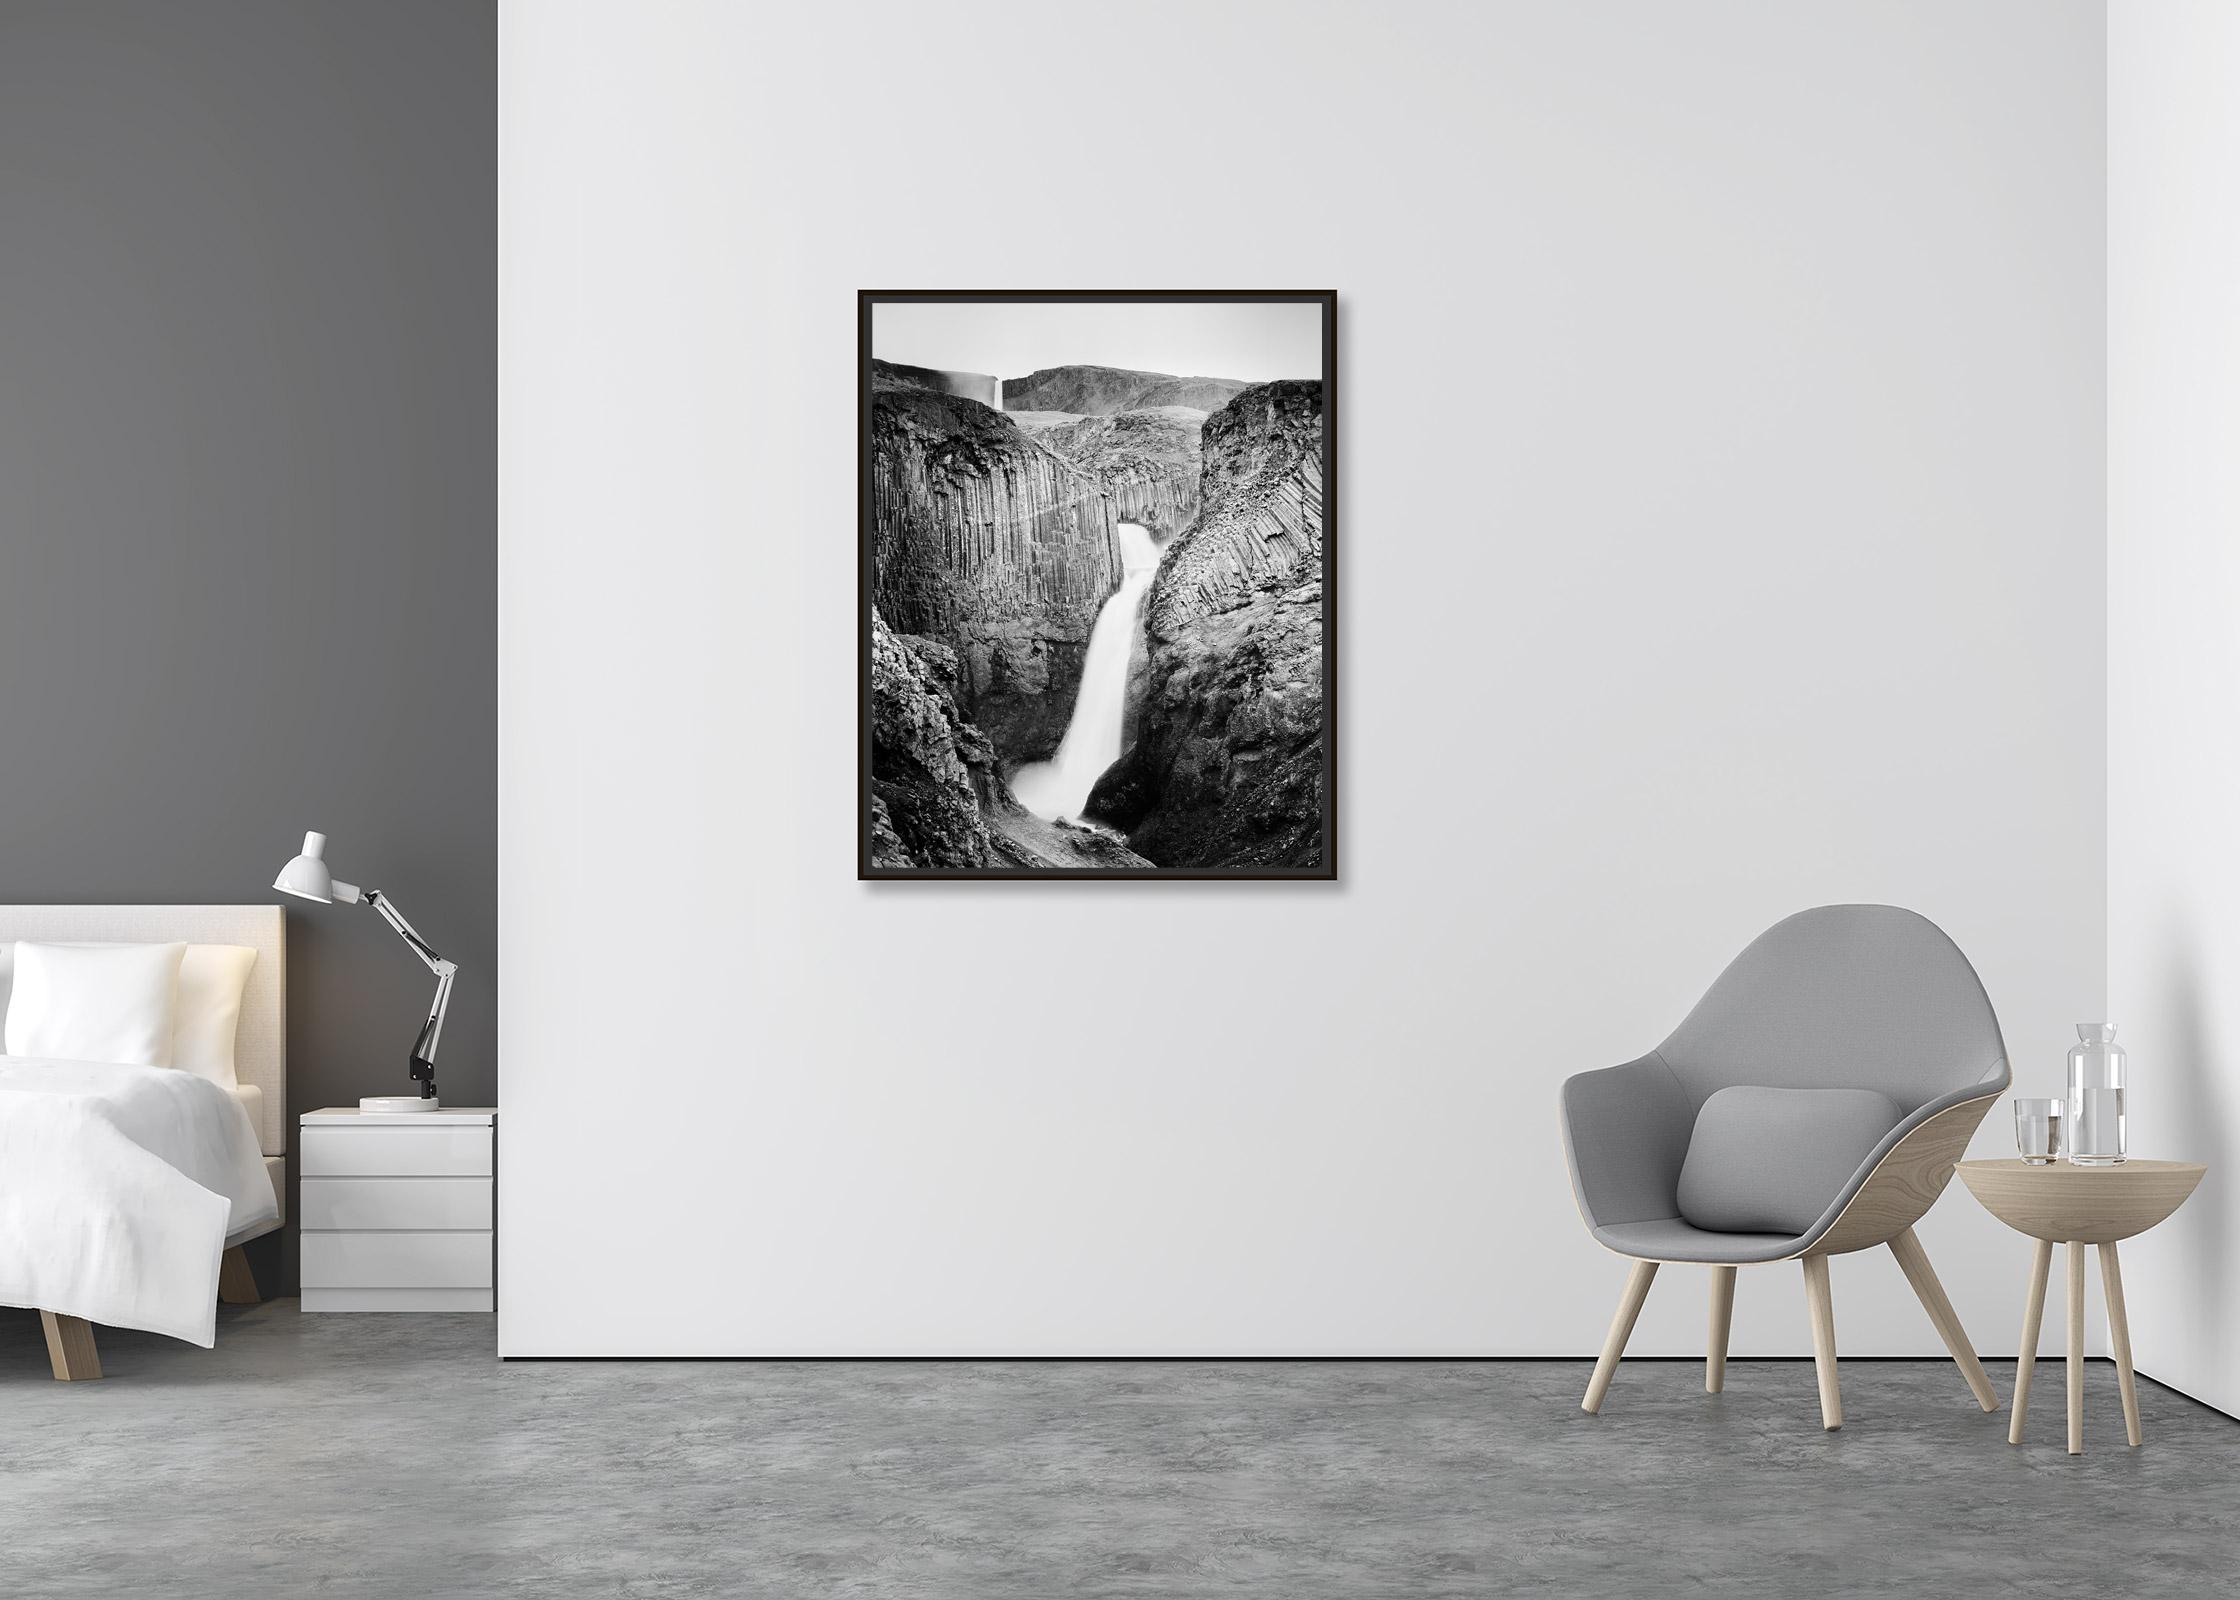 Hengifoss, Wasserfall, Island, Schwarz-Weiß-Landschaftsfotografie (Zeitgenössisch), Photograph, von Gerald Berghammer